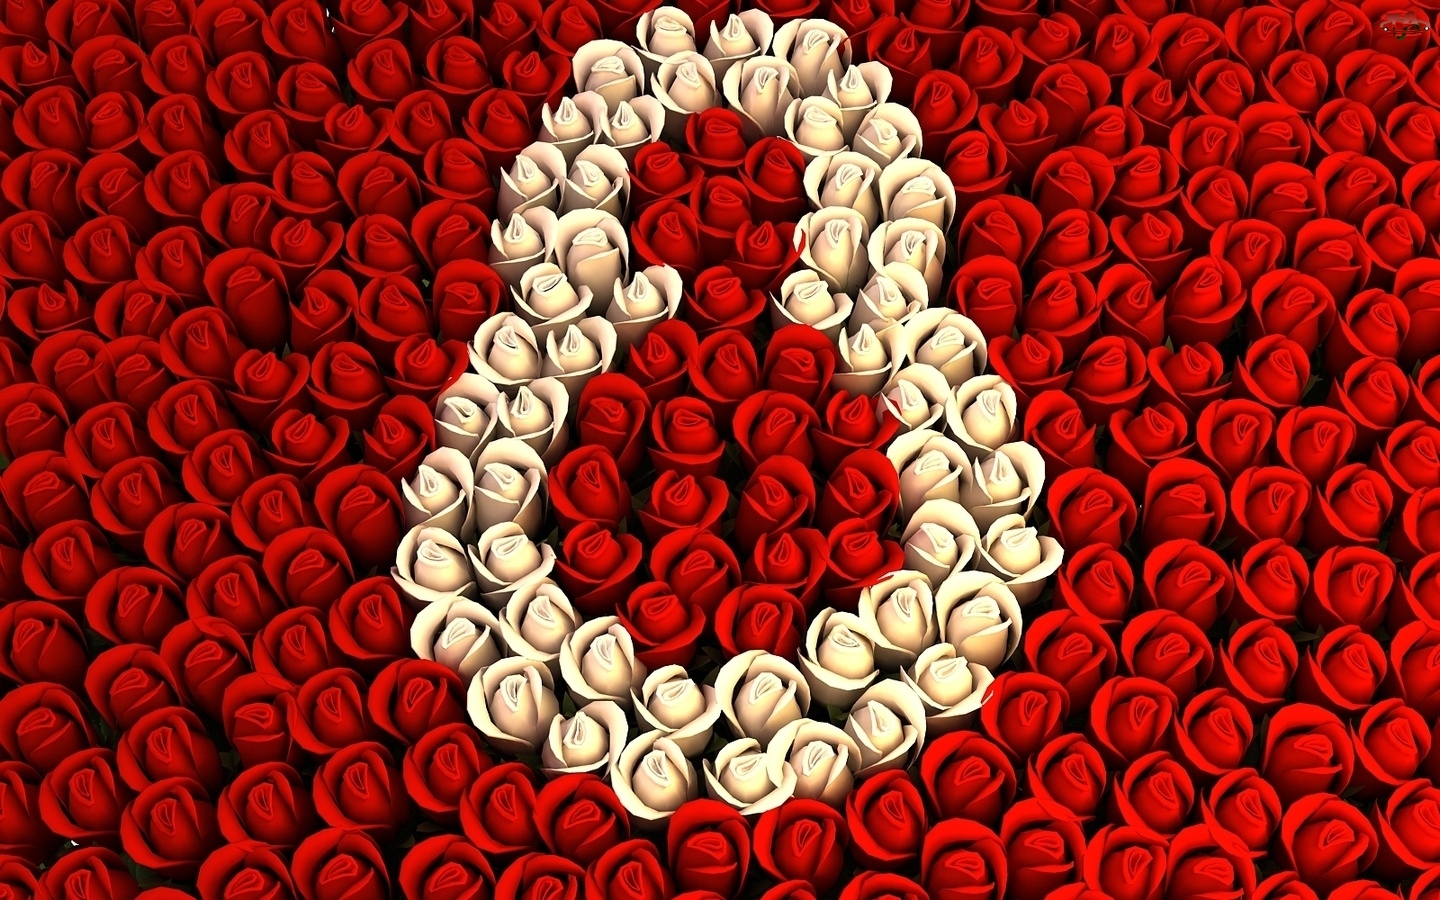 Kobiet, Biało, Róże, Czerwone, Dzień